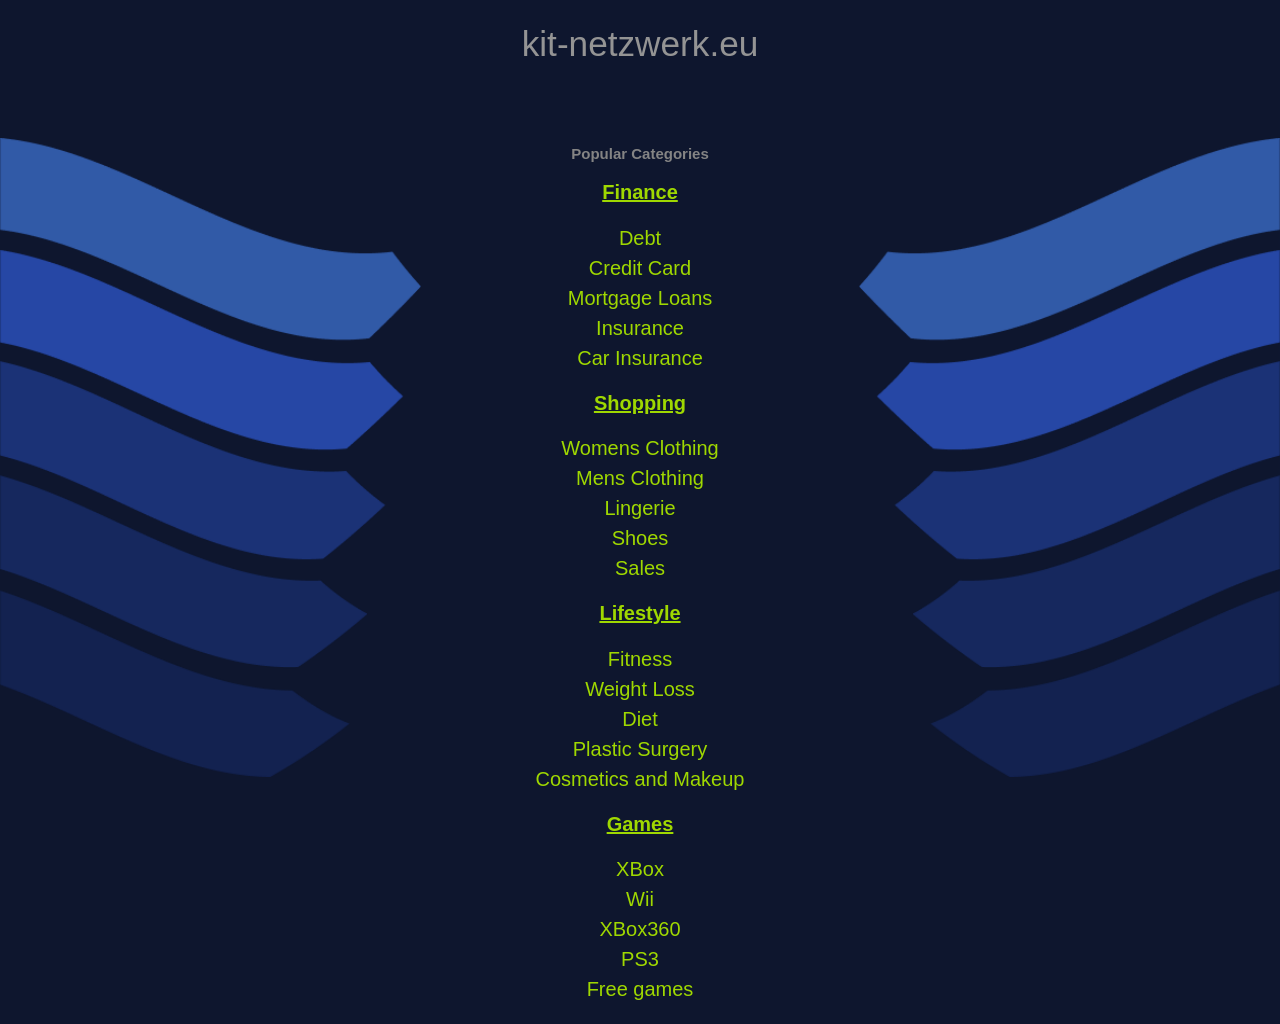 kit-netzwerk.eu